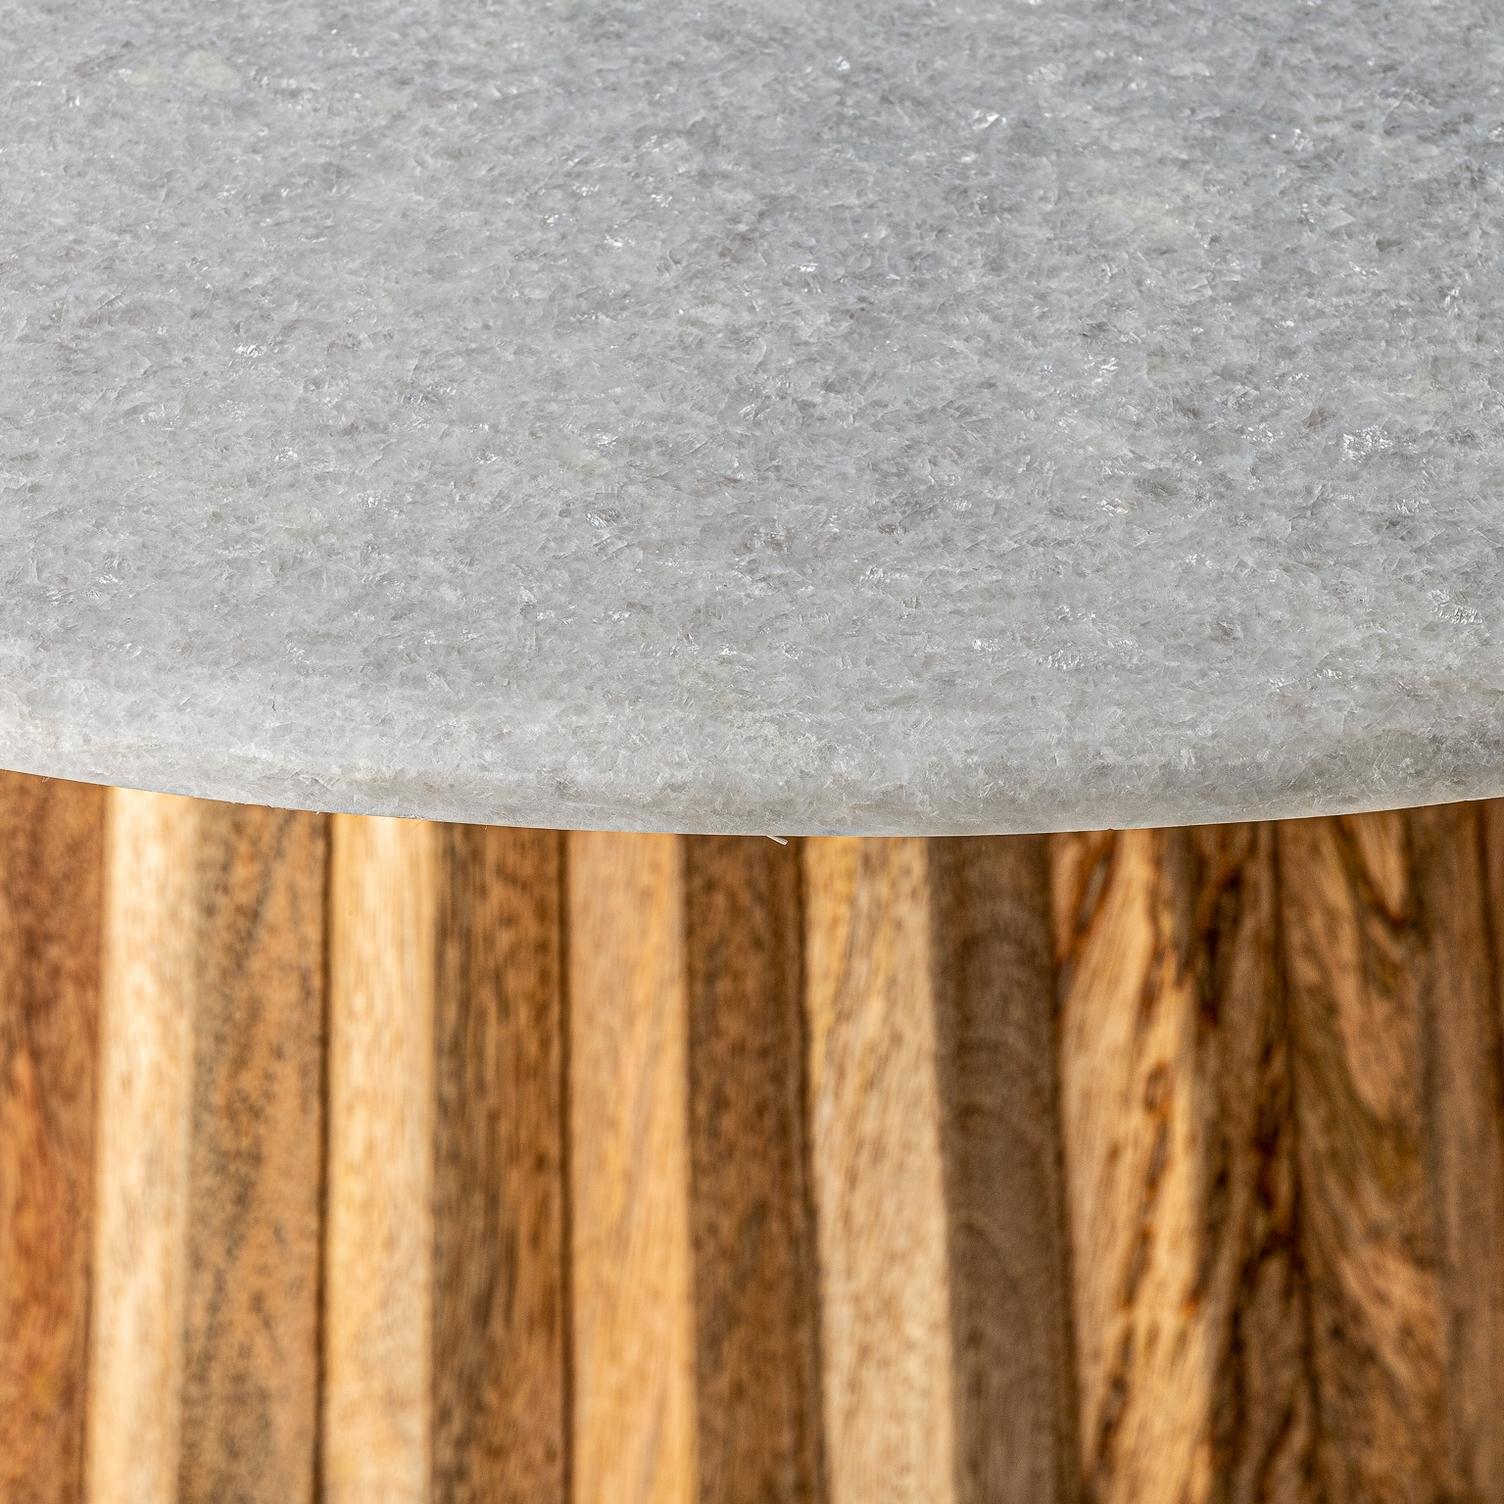 Runder Sockeltisch im italienischen Designstil, bestehend aus einem grafischen Holzsockel mit einer runden weißen Marmorplatte.